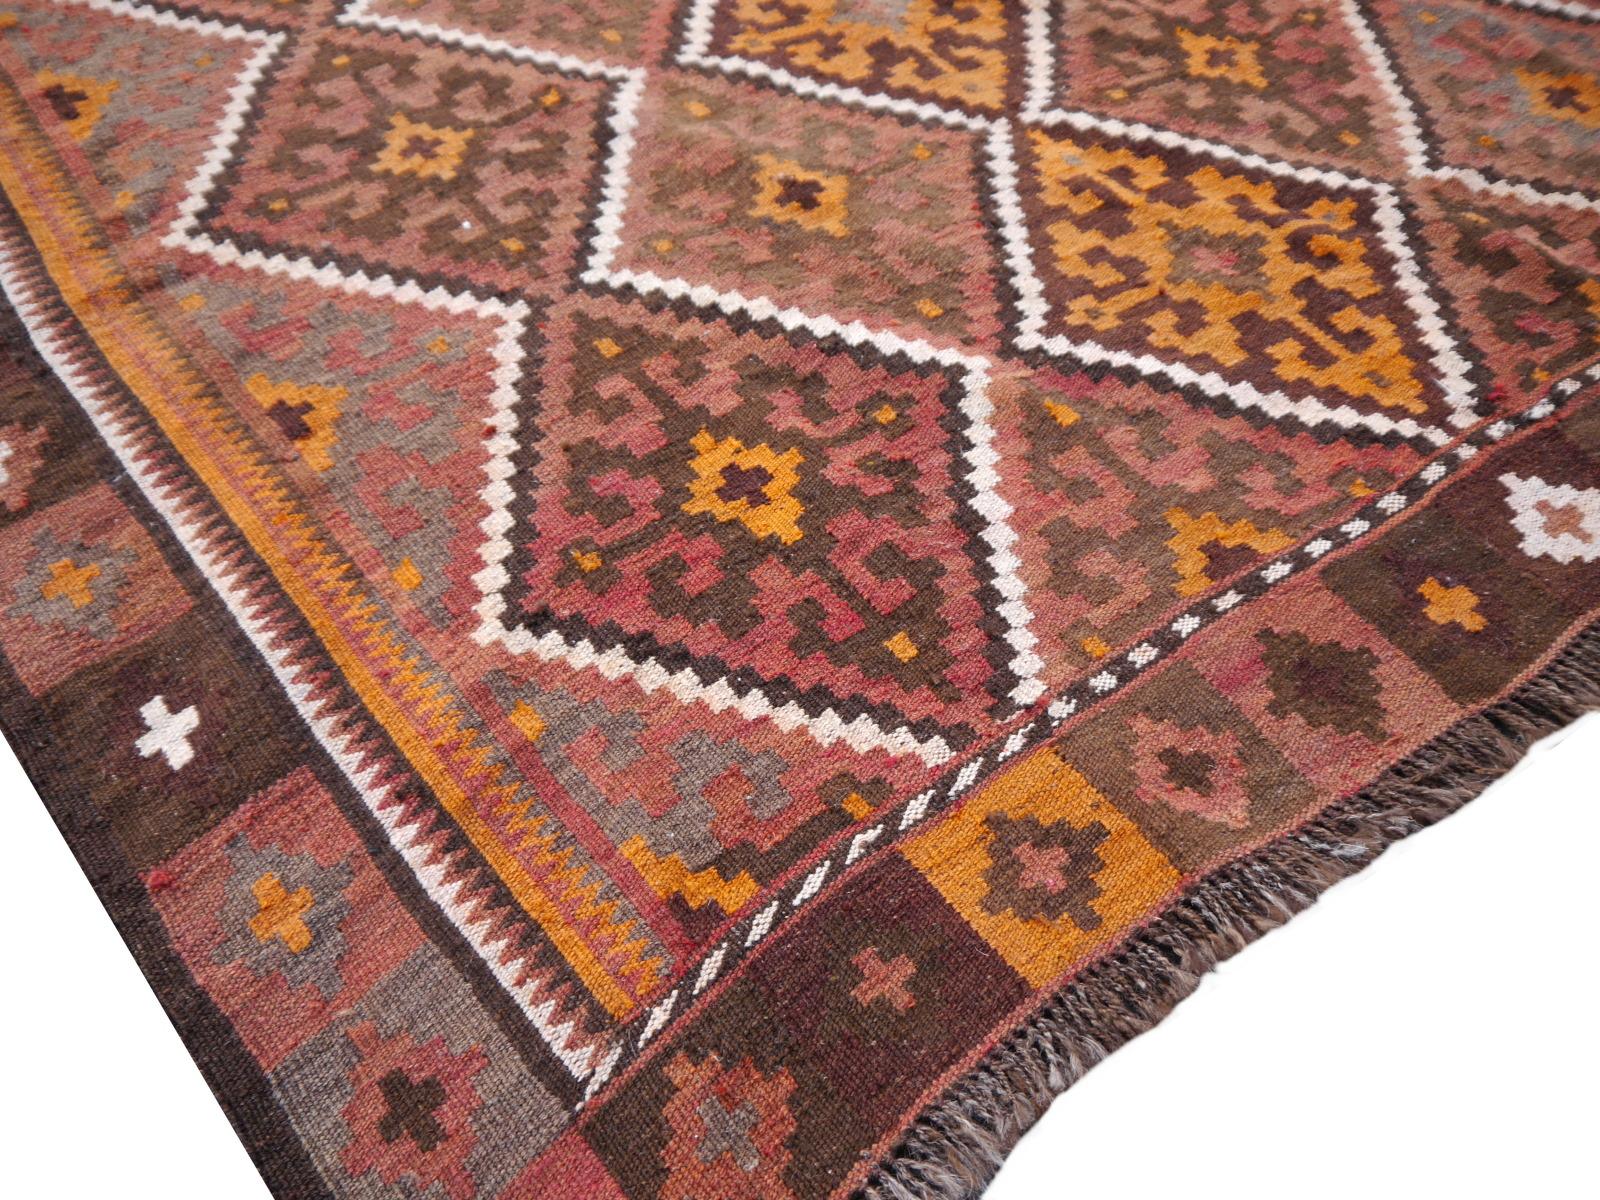 Große Farbe und Qualität Vintage Kelim Teppich aus Afghanistan.
Feiner handgewebter turkmenischer Kilim-Teppich oder turkmenischer Teppich

Schöner Vintage-Kilim-Teppich in gutem Zustand. Dieser Teppich wurde vom Stamm der Kizil-Ayak hergestellt.